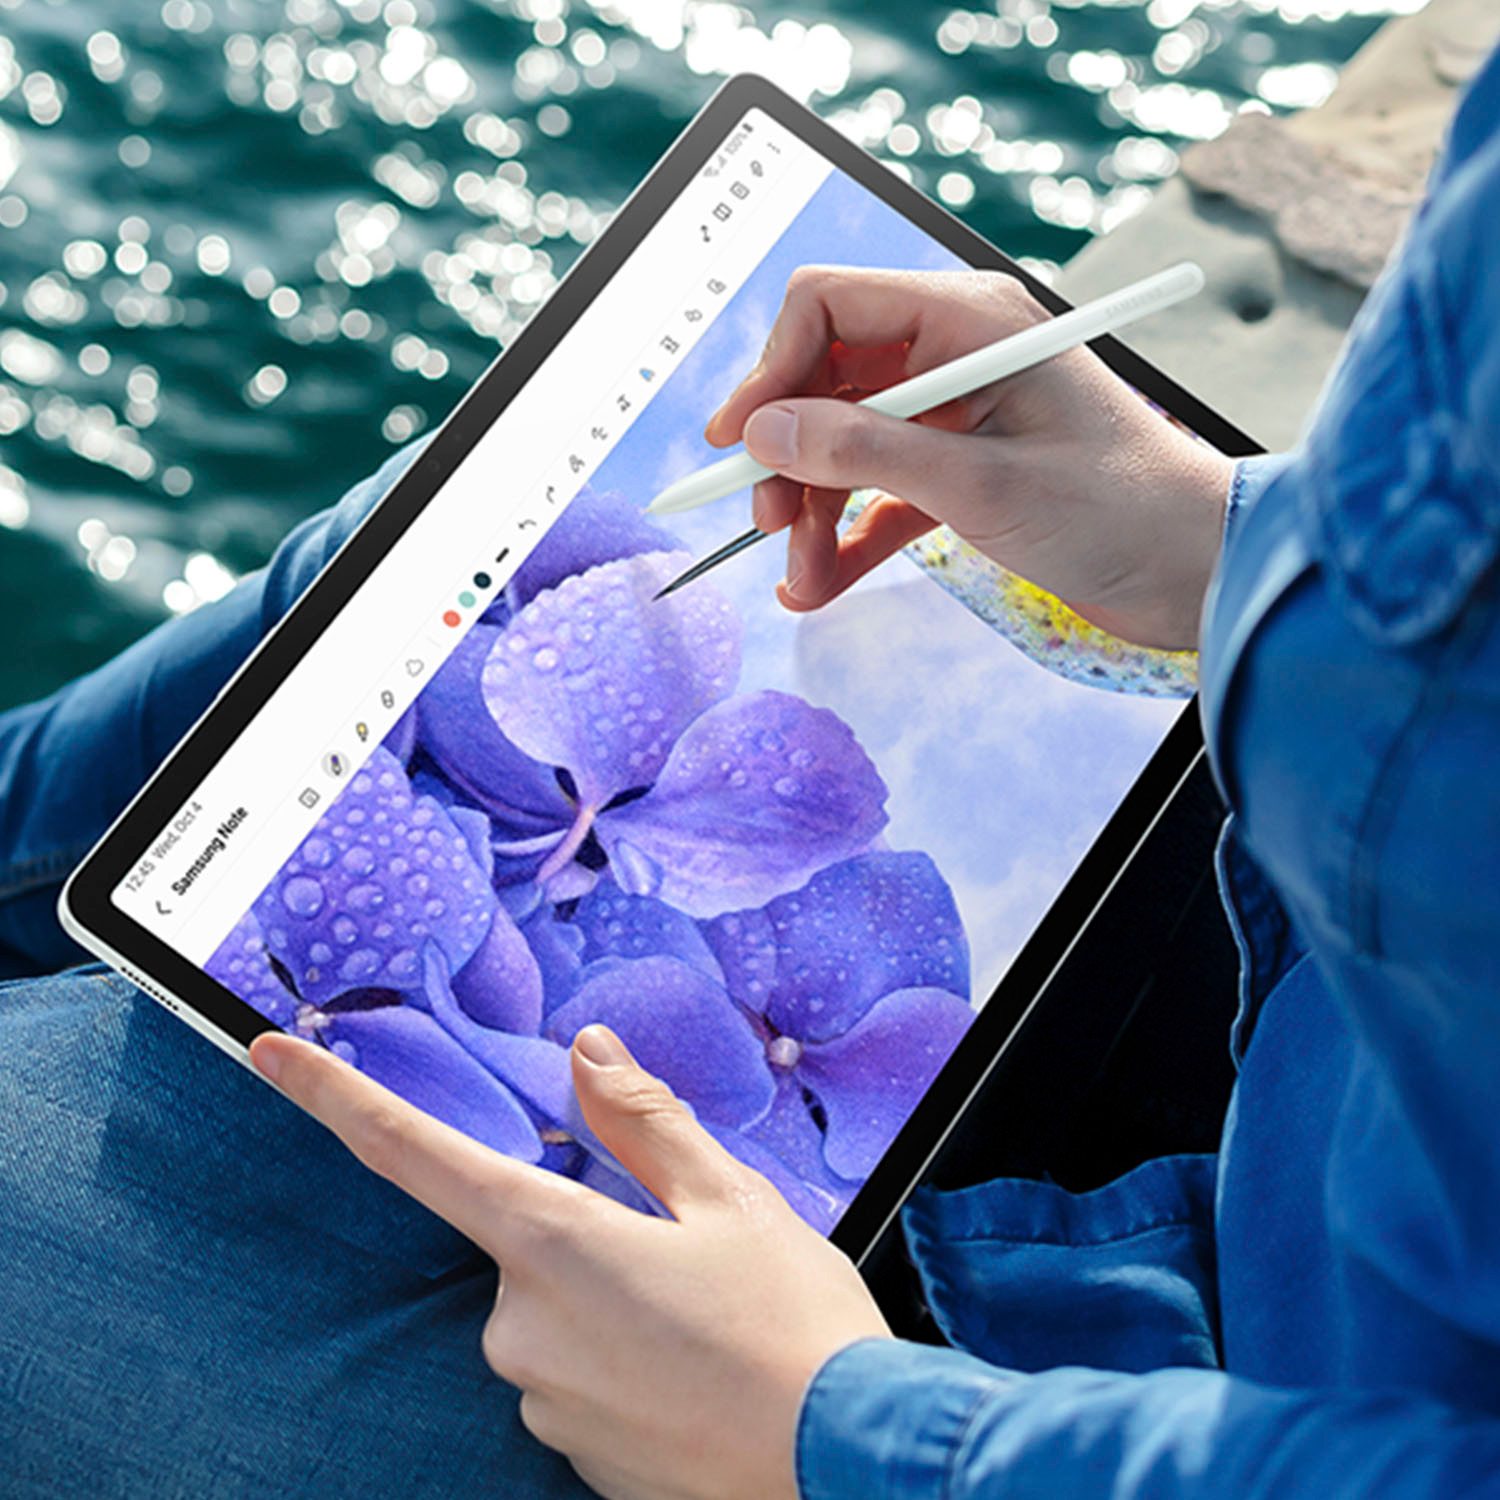 Tablet SAMSUNG 11 Pulgadas S9 FE 128GB WiFi Color Gris